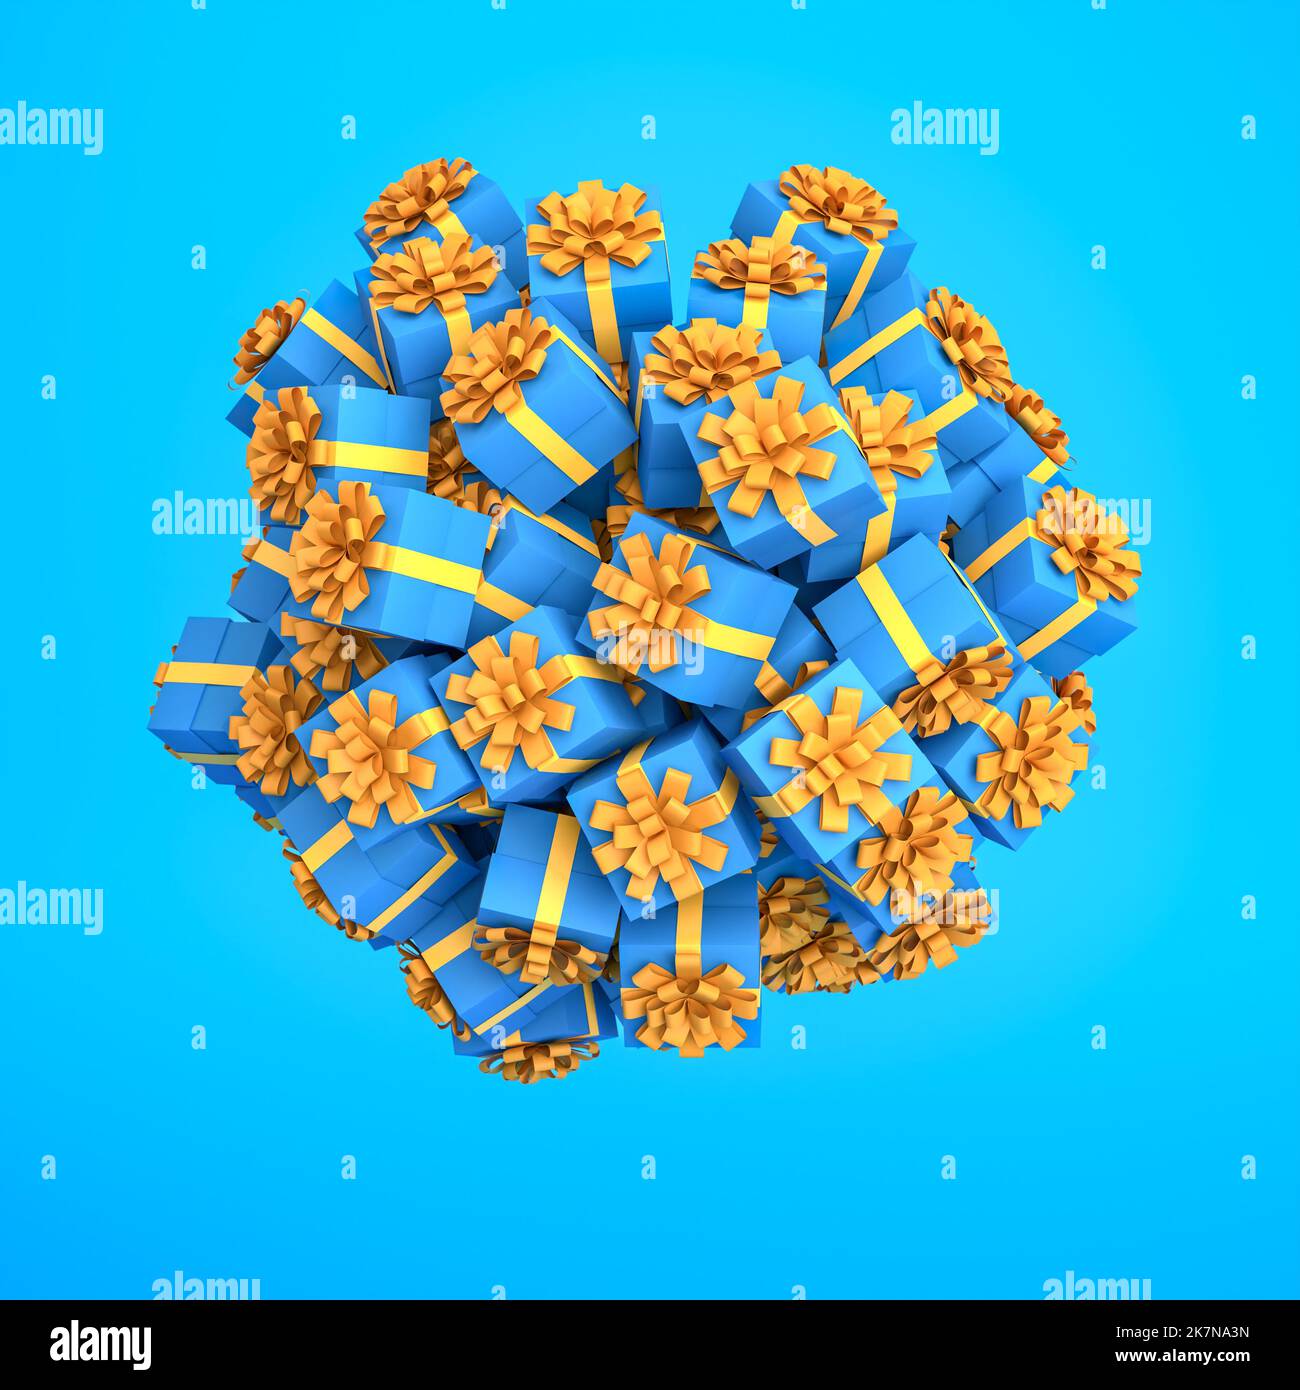 Beaucoup de boîtes-cadeaux bleues avec ruban jaune doré et noeud regroupés à une balle ou une planète planant sur un fond bleu. Concept d'abondance. Banque D'Images